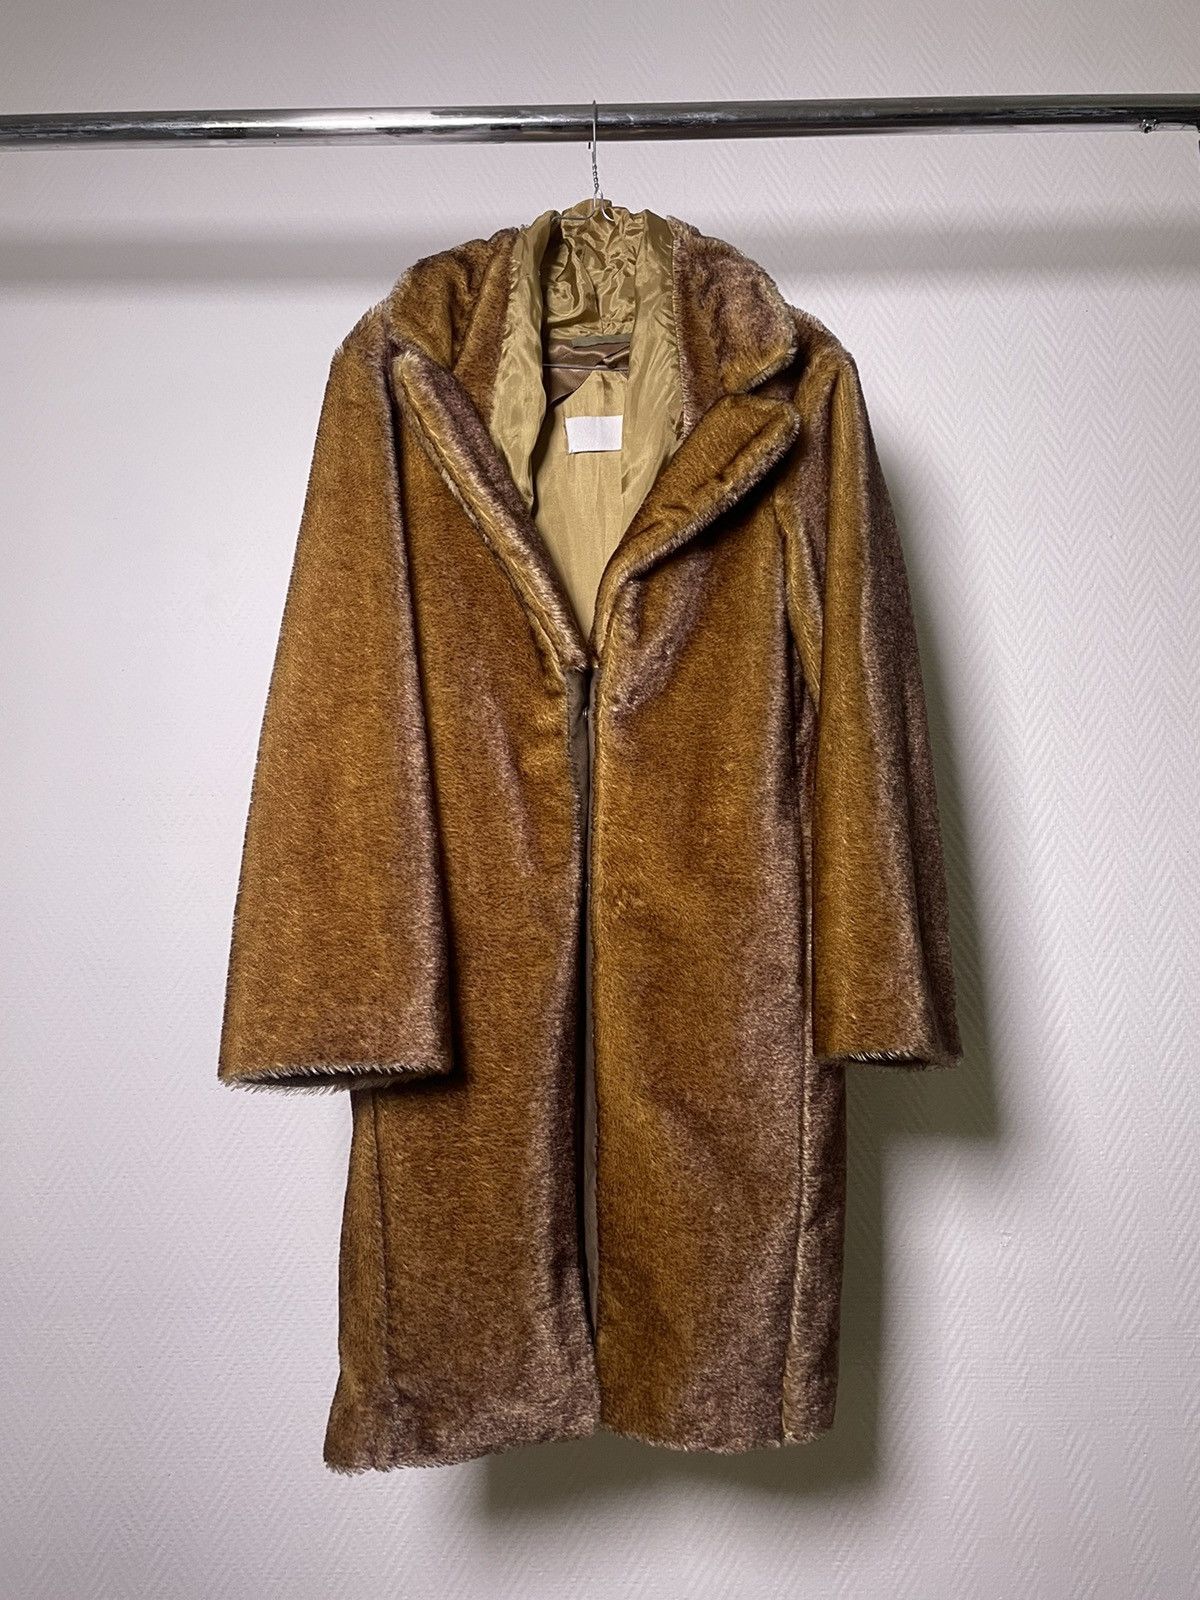 Maison Margiela AW03 Martin Margiela Fake-Fur Teddy Coat Runway Size 40 |  Grailed